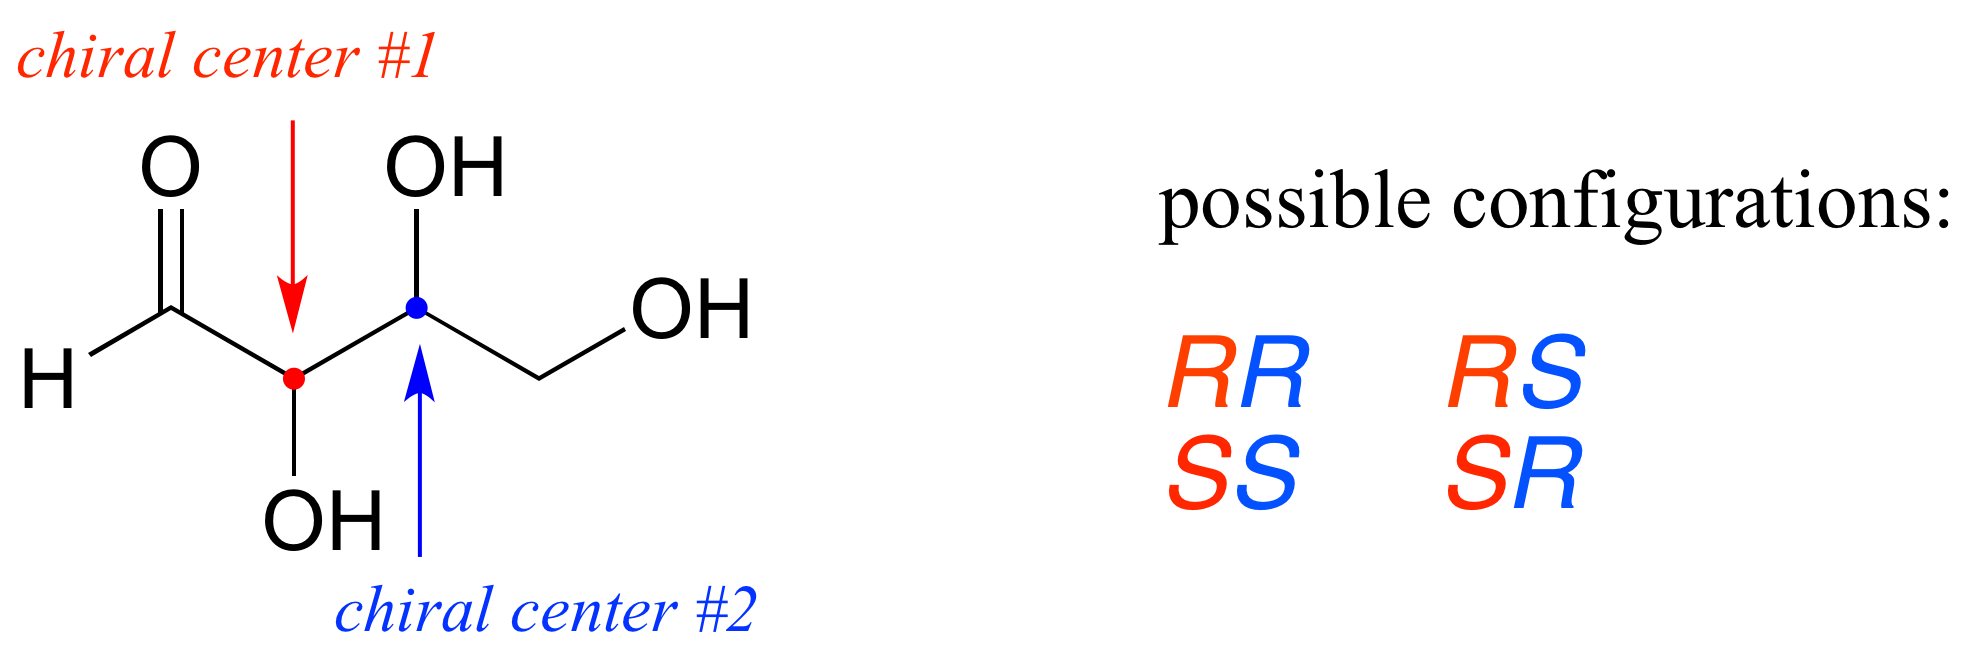 Molécula con dos centros quirales; Centro quiral 1 en rojo y centro quiral 2 en azul. Posibles configuraciones (centro quiral 1 listado primero y centro quiral 2 listado segundo): R R, R S, S, S, S R.